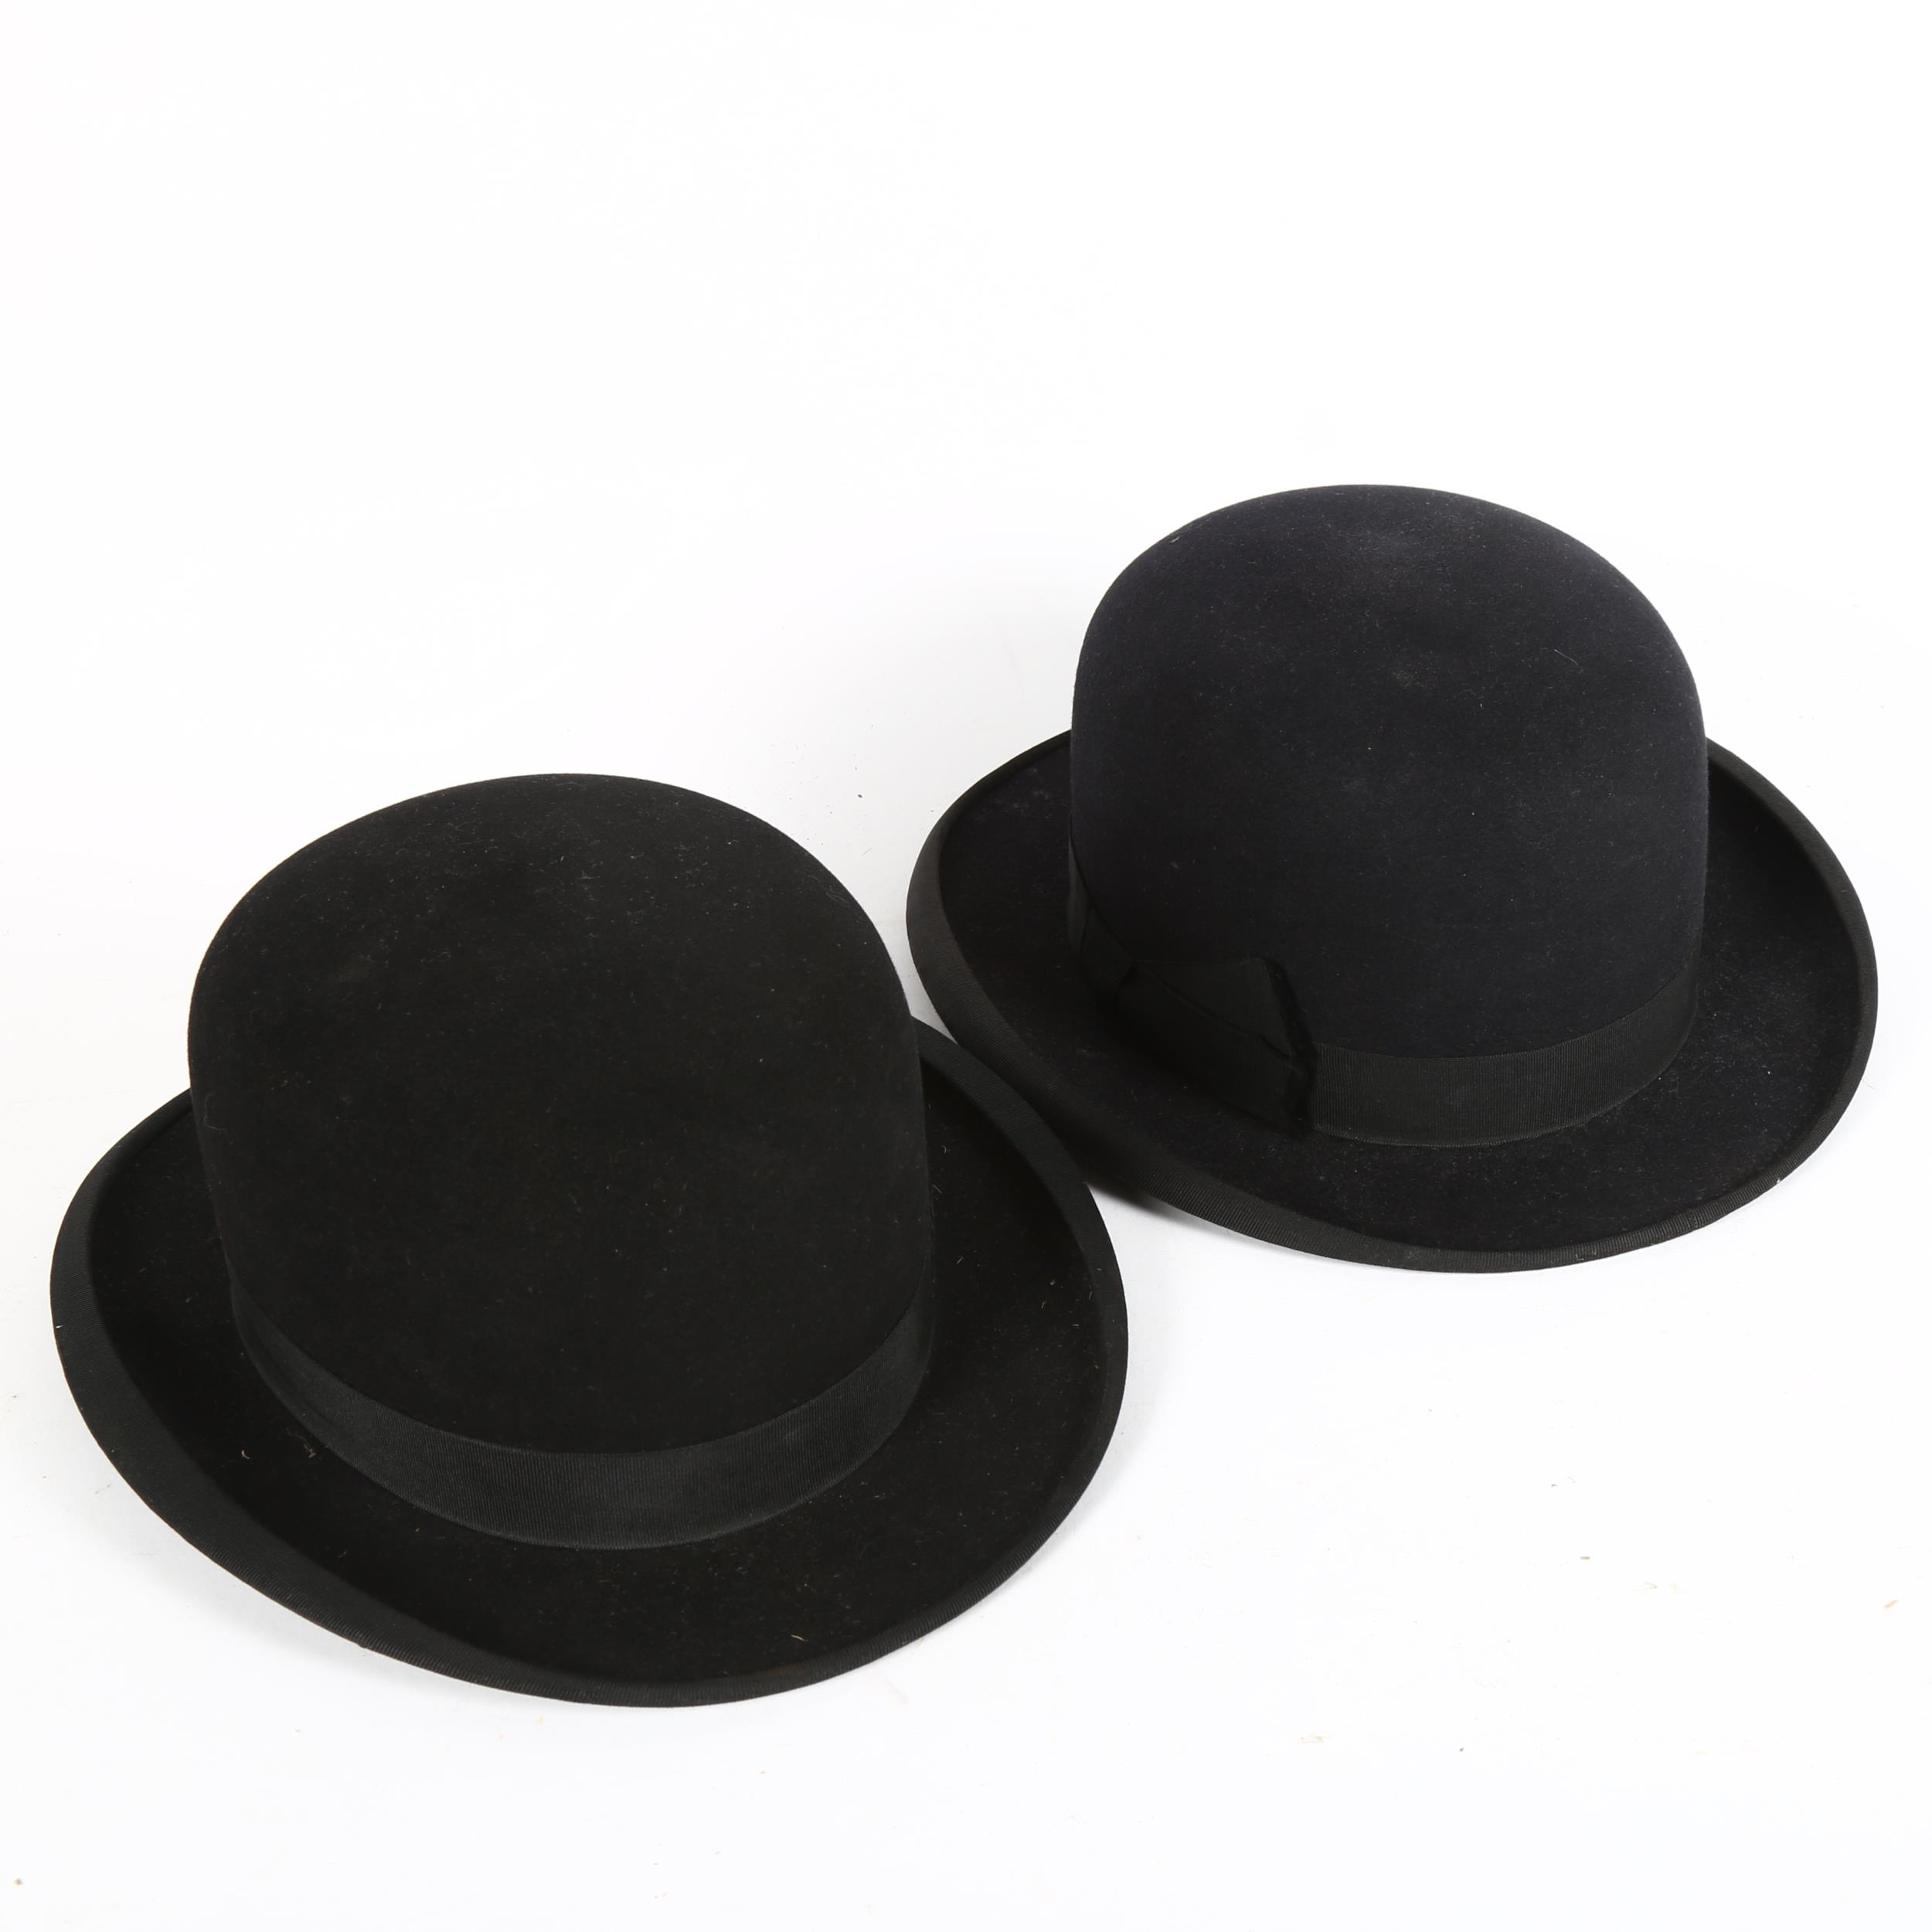 2 Vintage black bowler hats